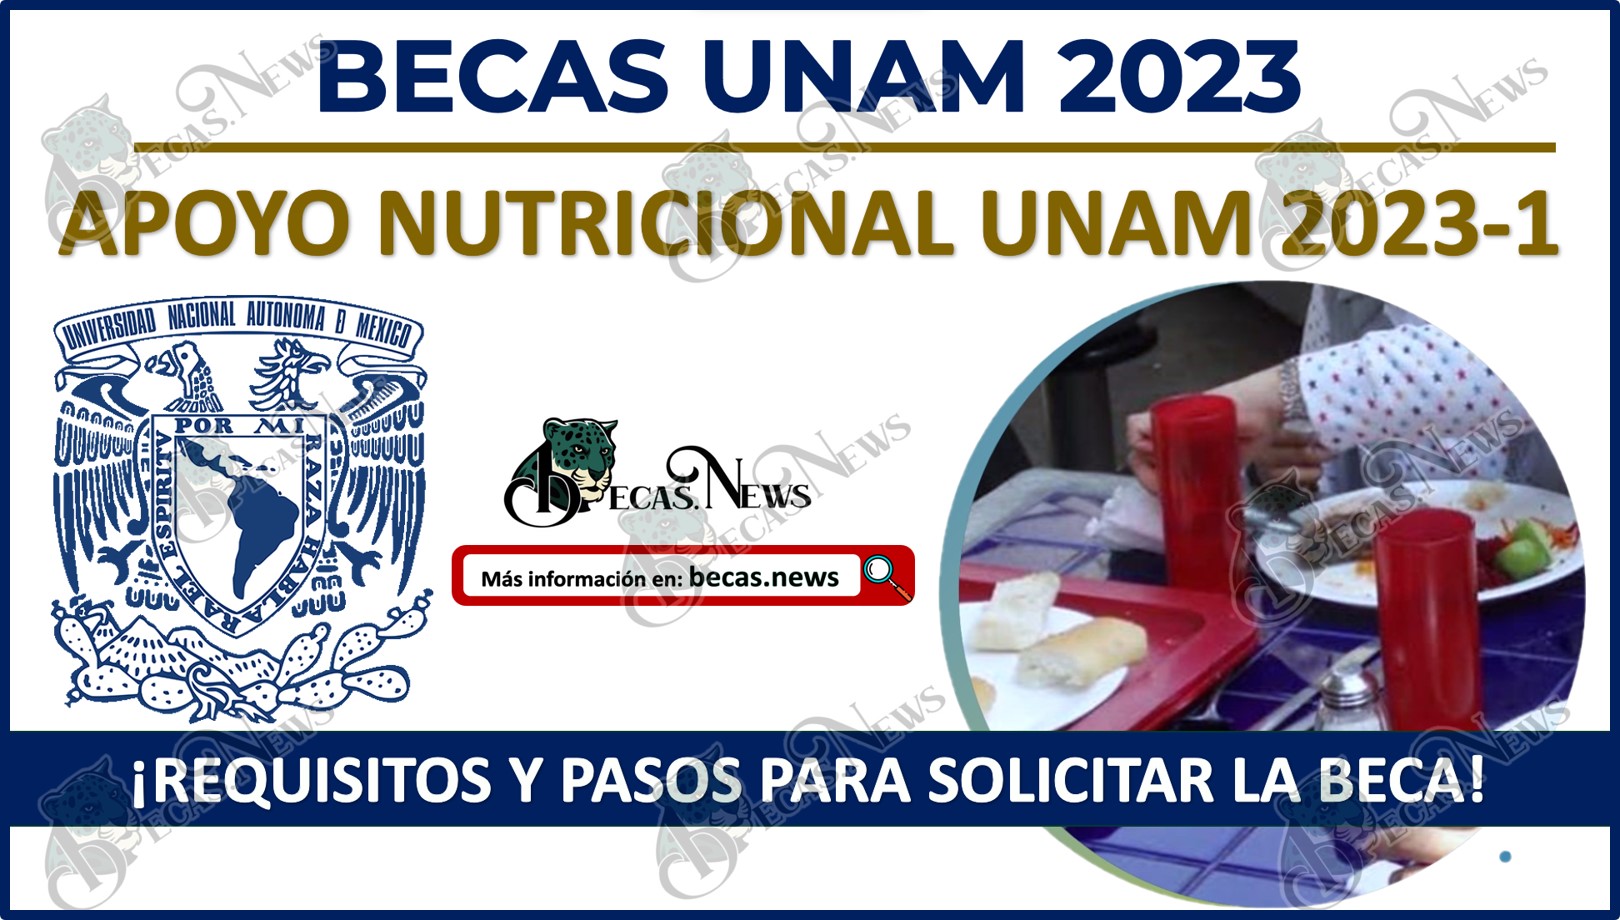 Apoyo Nutricional UNAM 2023 | Requisitos y pasos para solicitar la beca